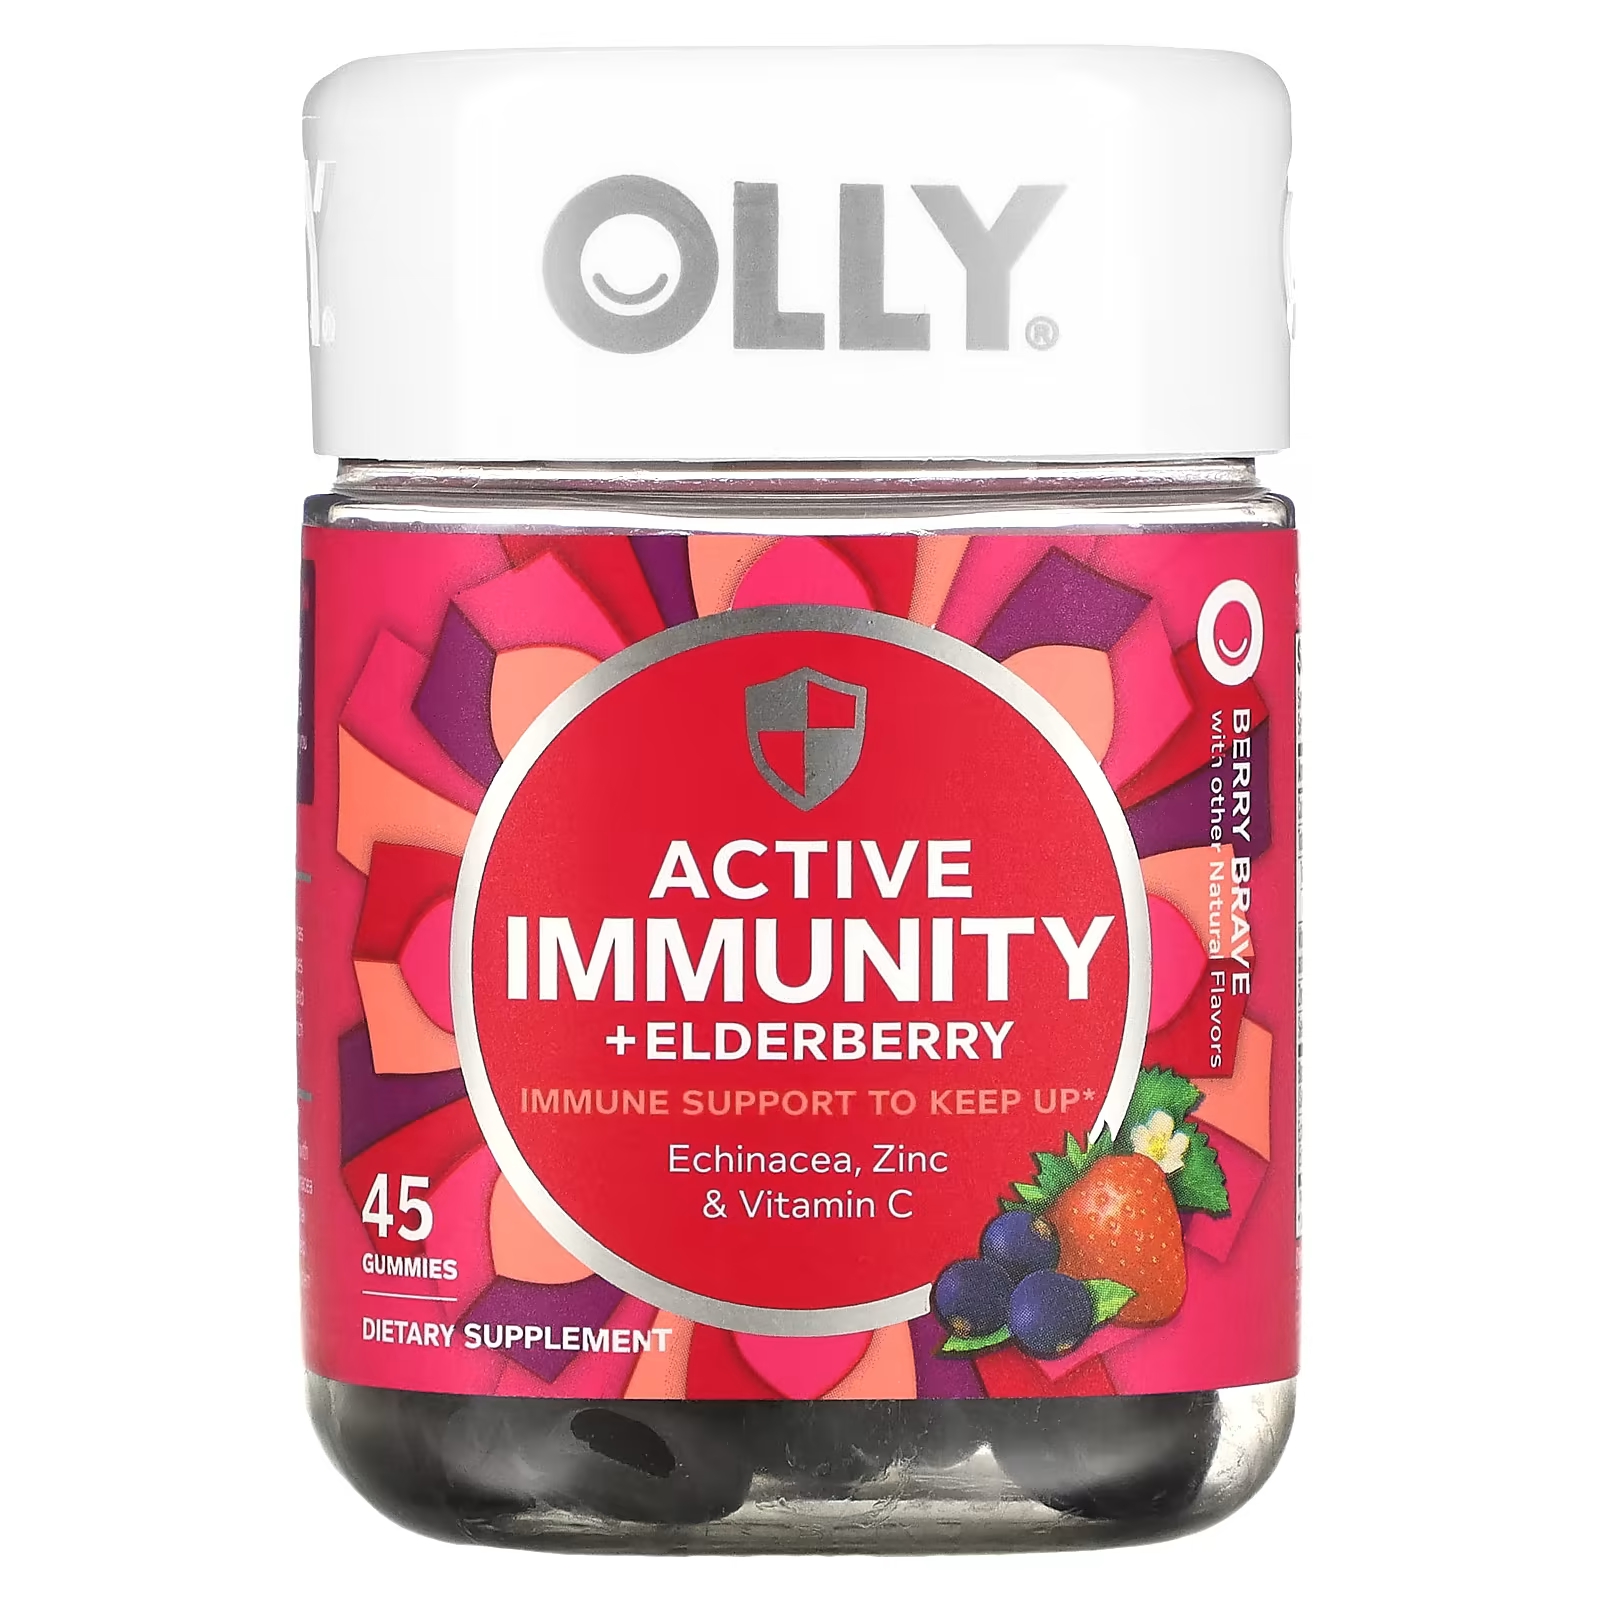 Пищевая добавка Olly Active Immunity + Elderberry Berry Brave, 45 жевательных таблеток цинк 50 мг иммунная поддержка и антиоксидантная добавка добавка для улучшения мольности спермы повышения количества и эякуляции